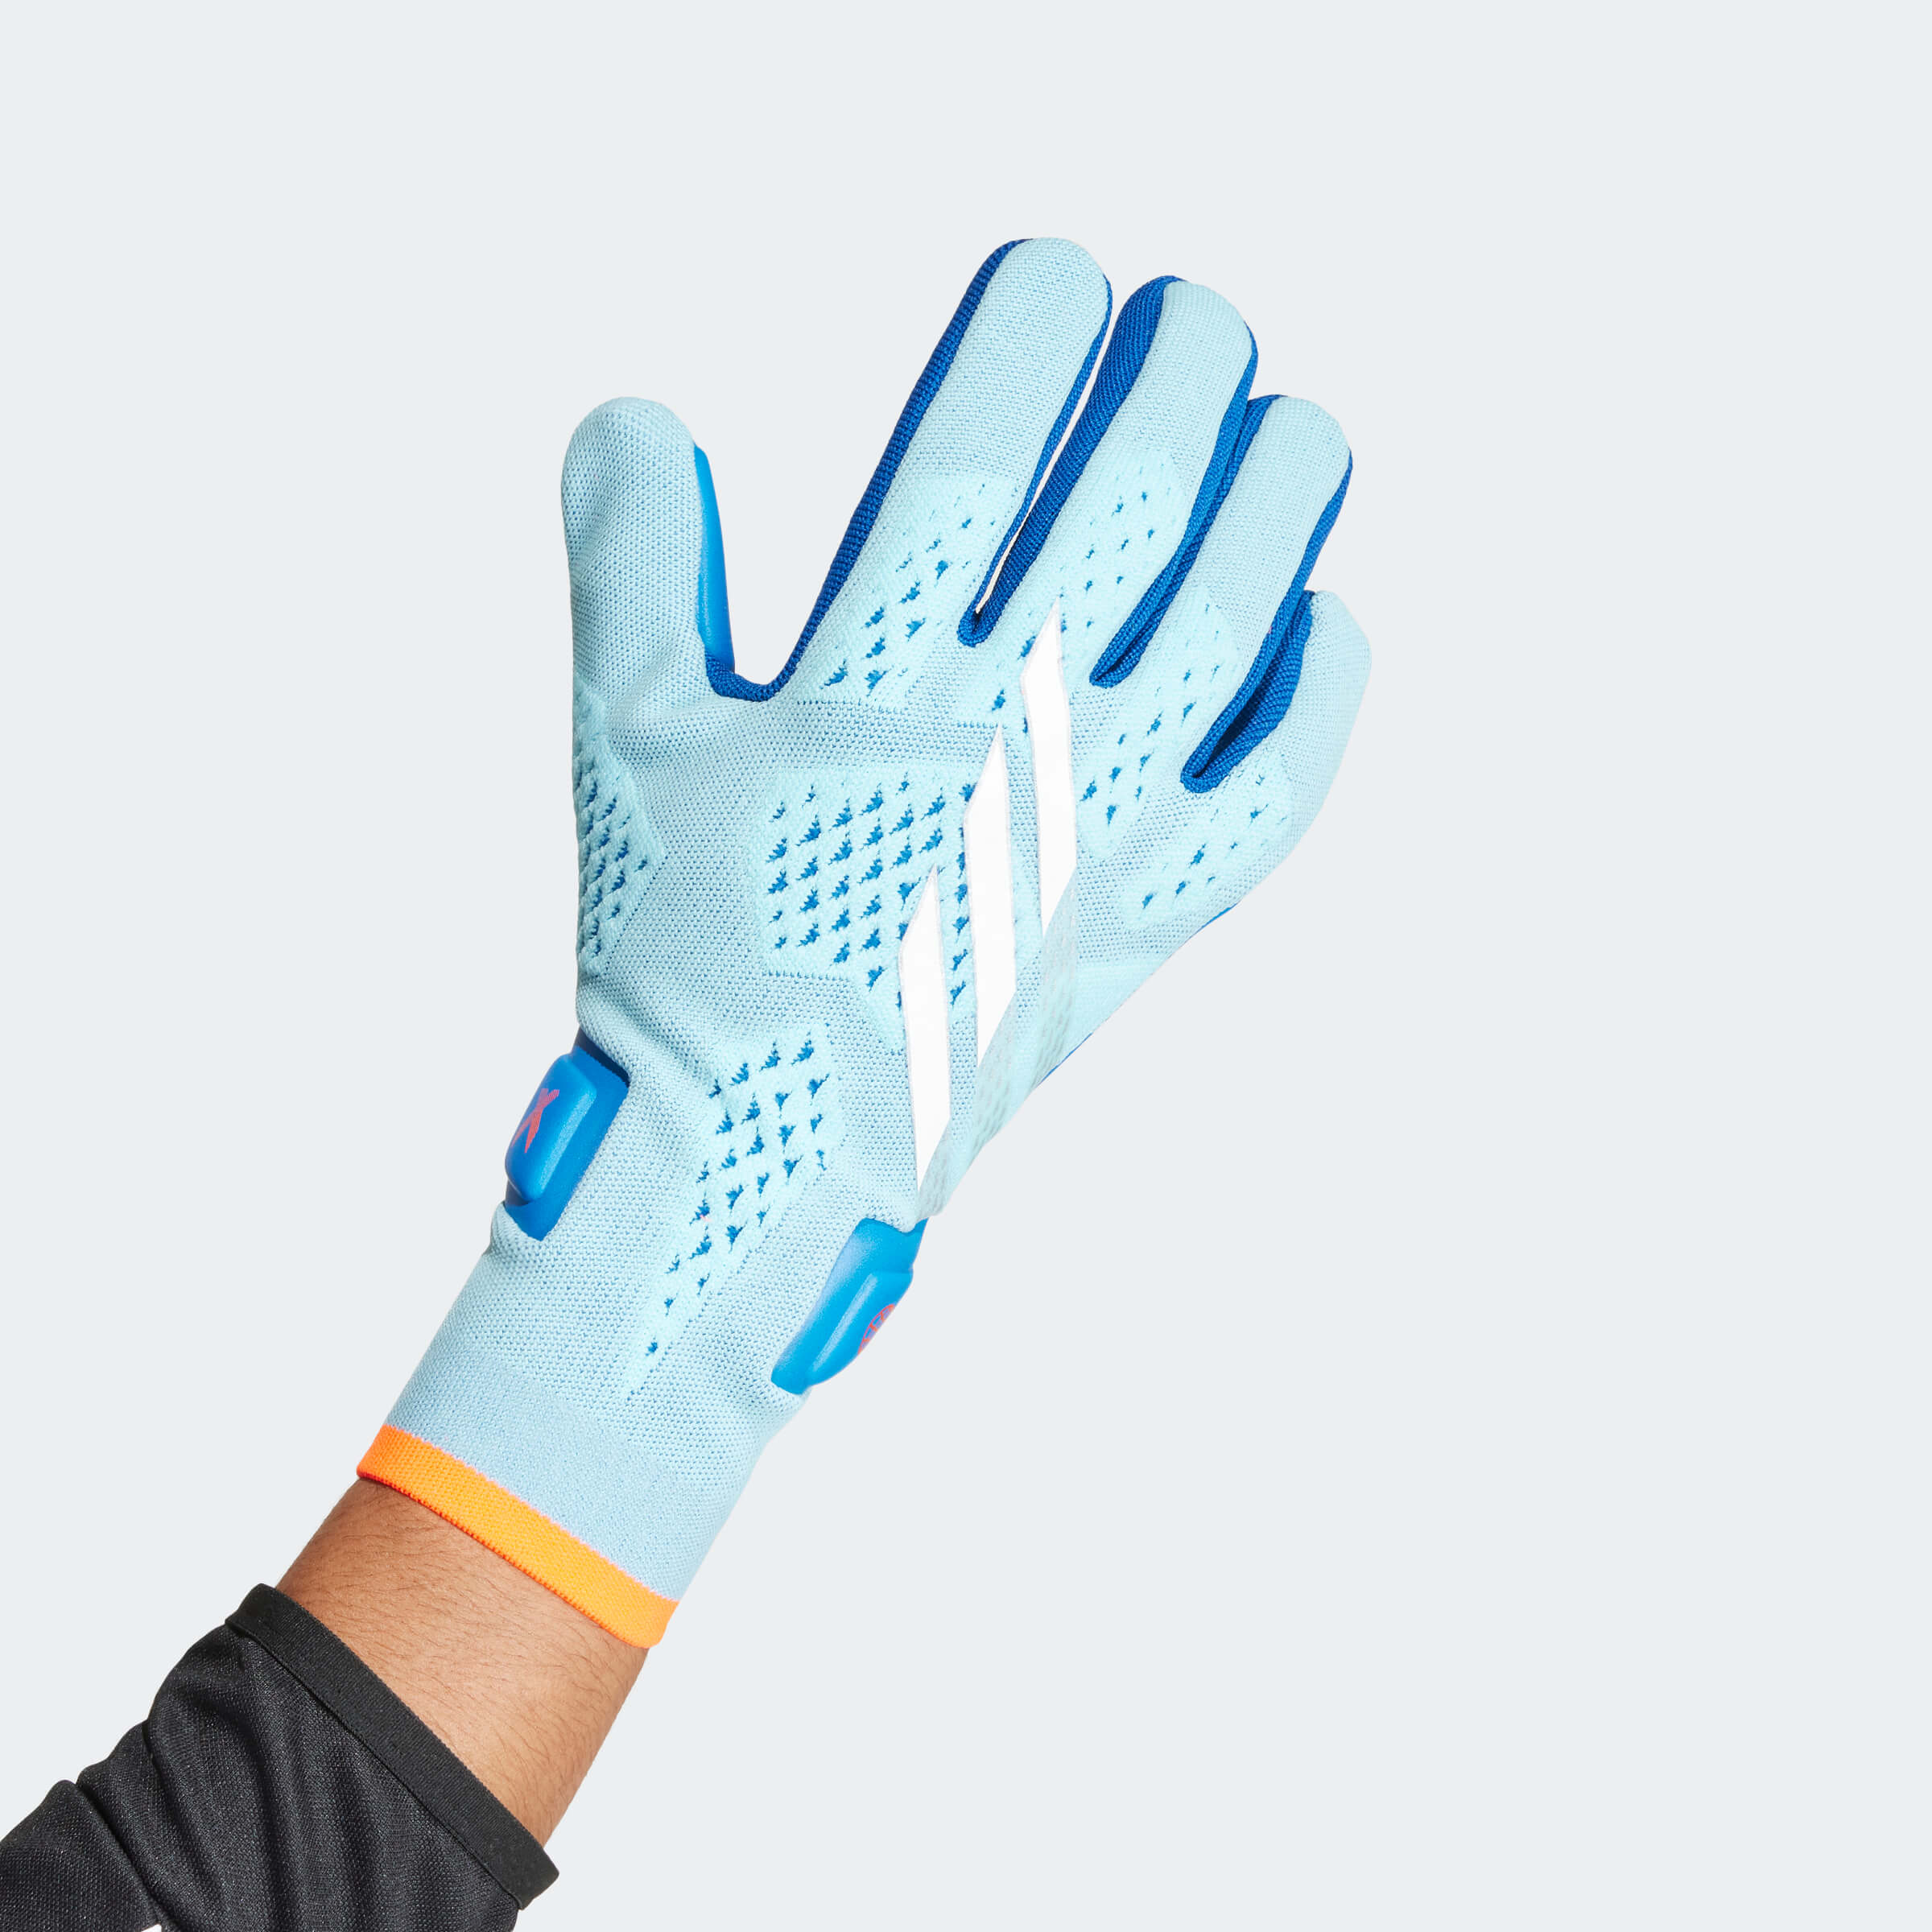 Adidas Predator Training Gloves Bright Royal 7 - Soccer Gloves